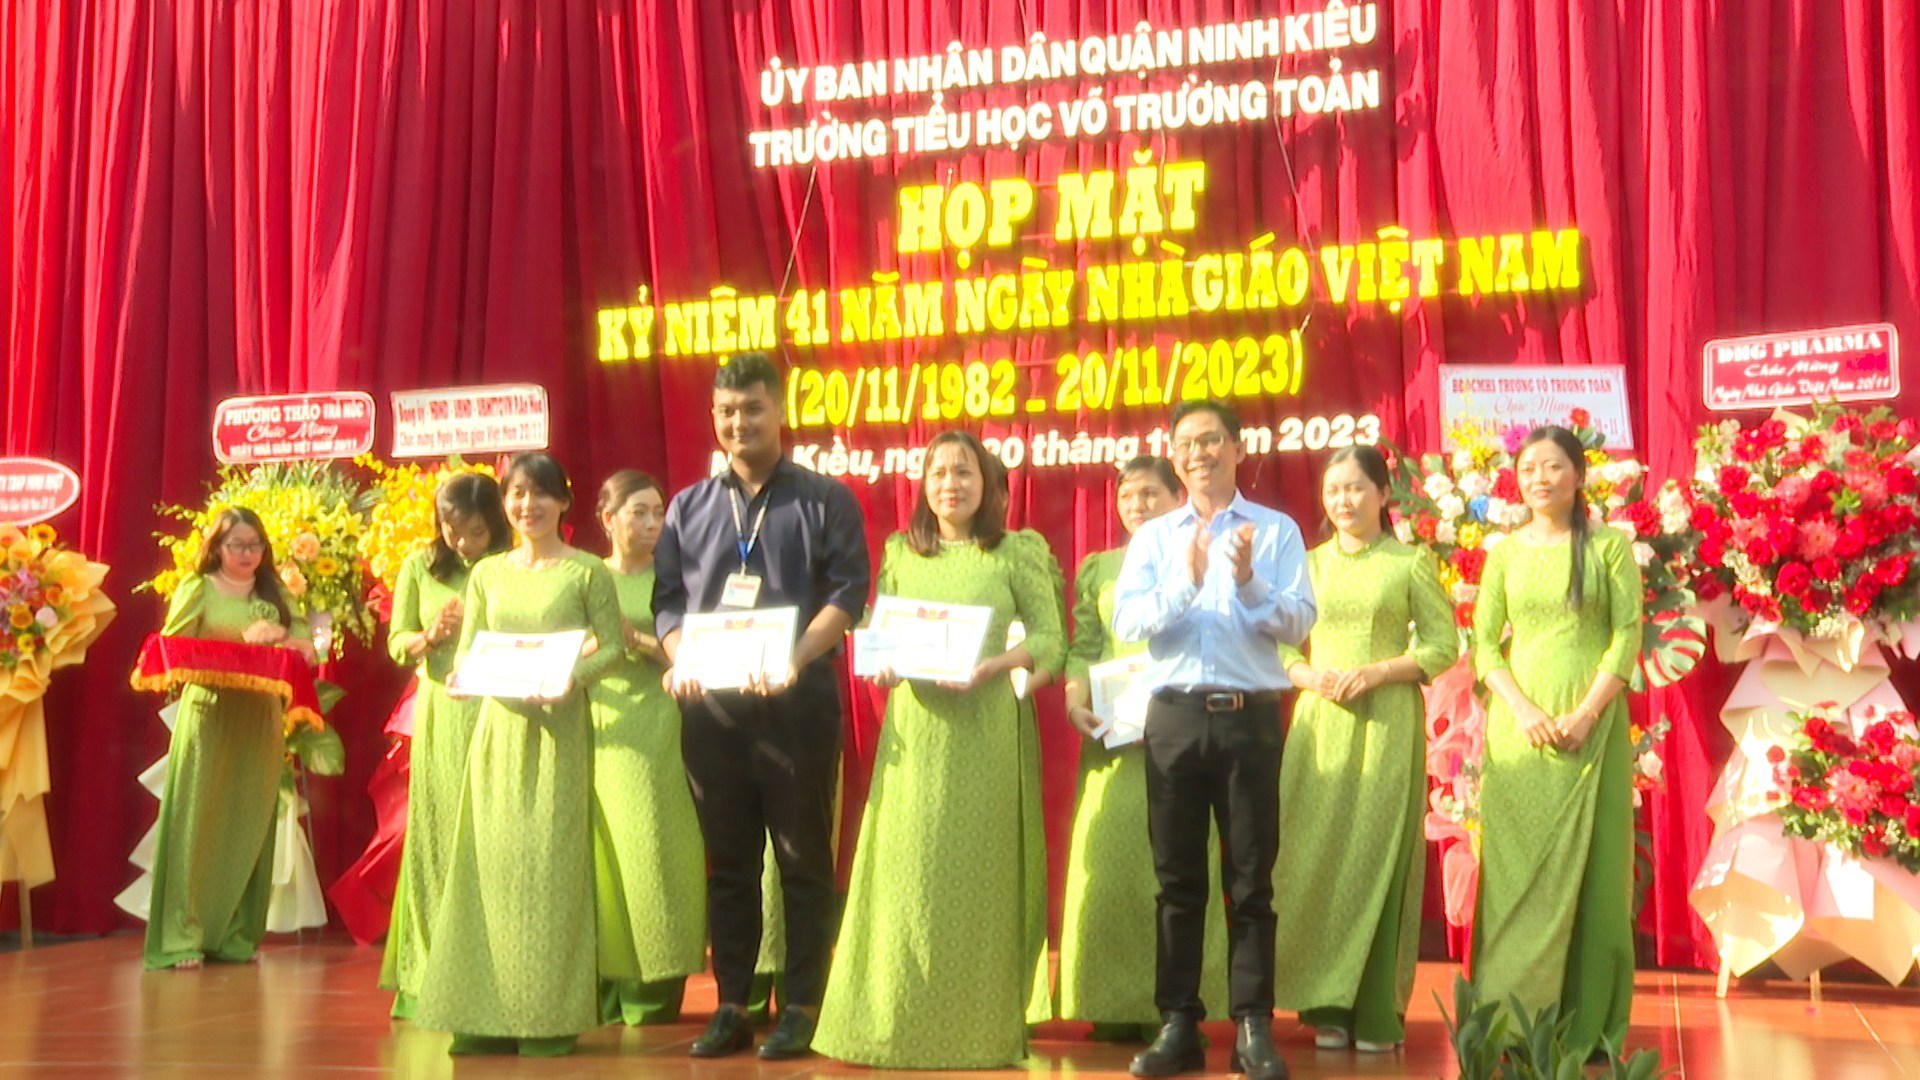 Hình 4: Nhà trường trao thưởng cho các tiết mục thi diễn văn nghệ do trường tổ chức, trong khuôn khổ các hoạt động chào mừng kỷ niệm ngày nhà giáo Việt Nam